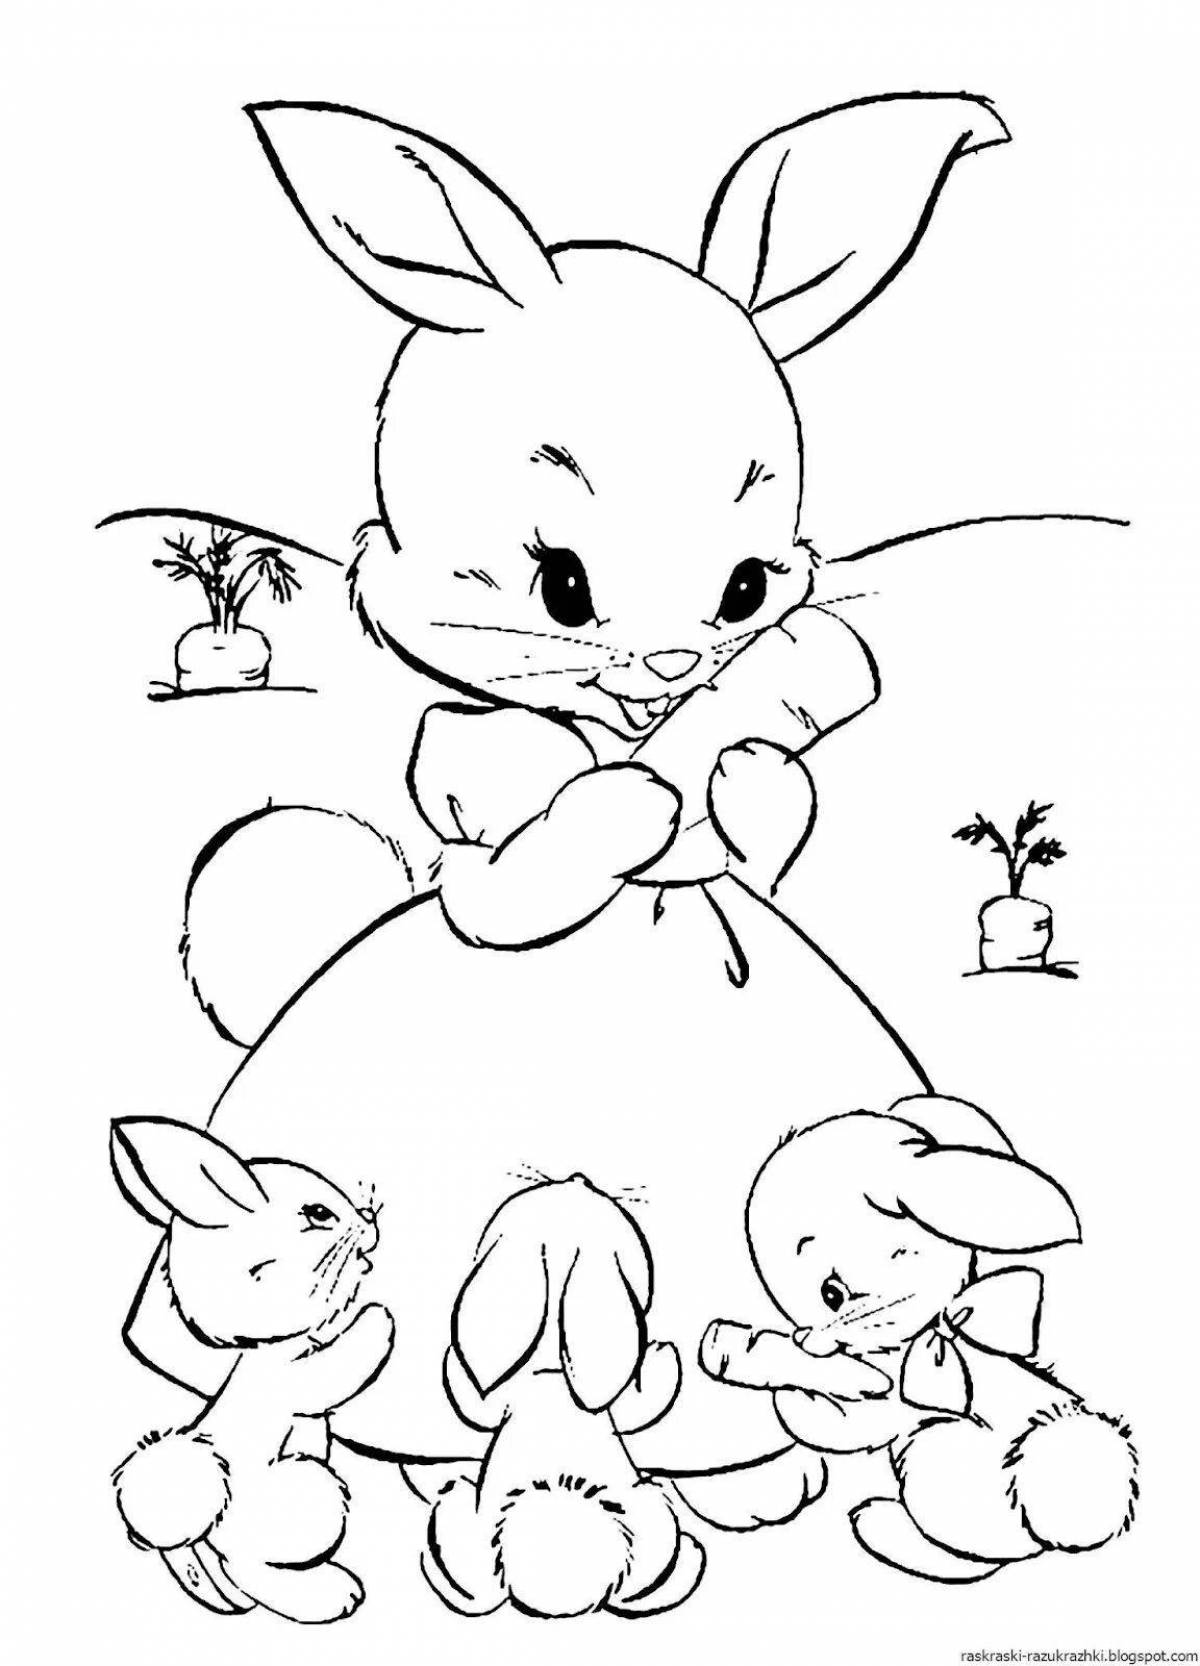 Юмористическая раскраска человек-кролик